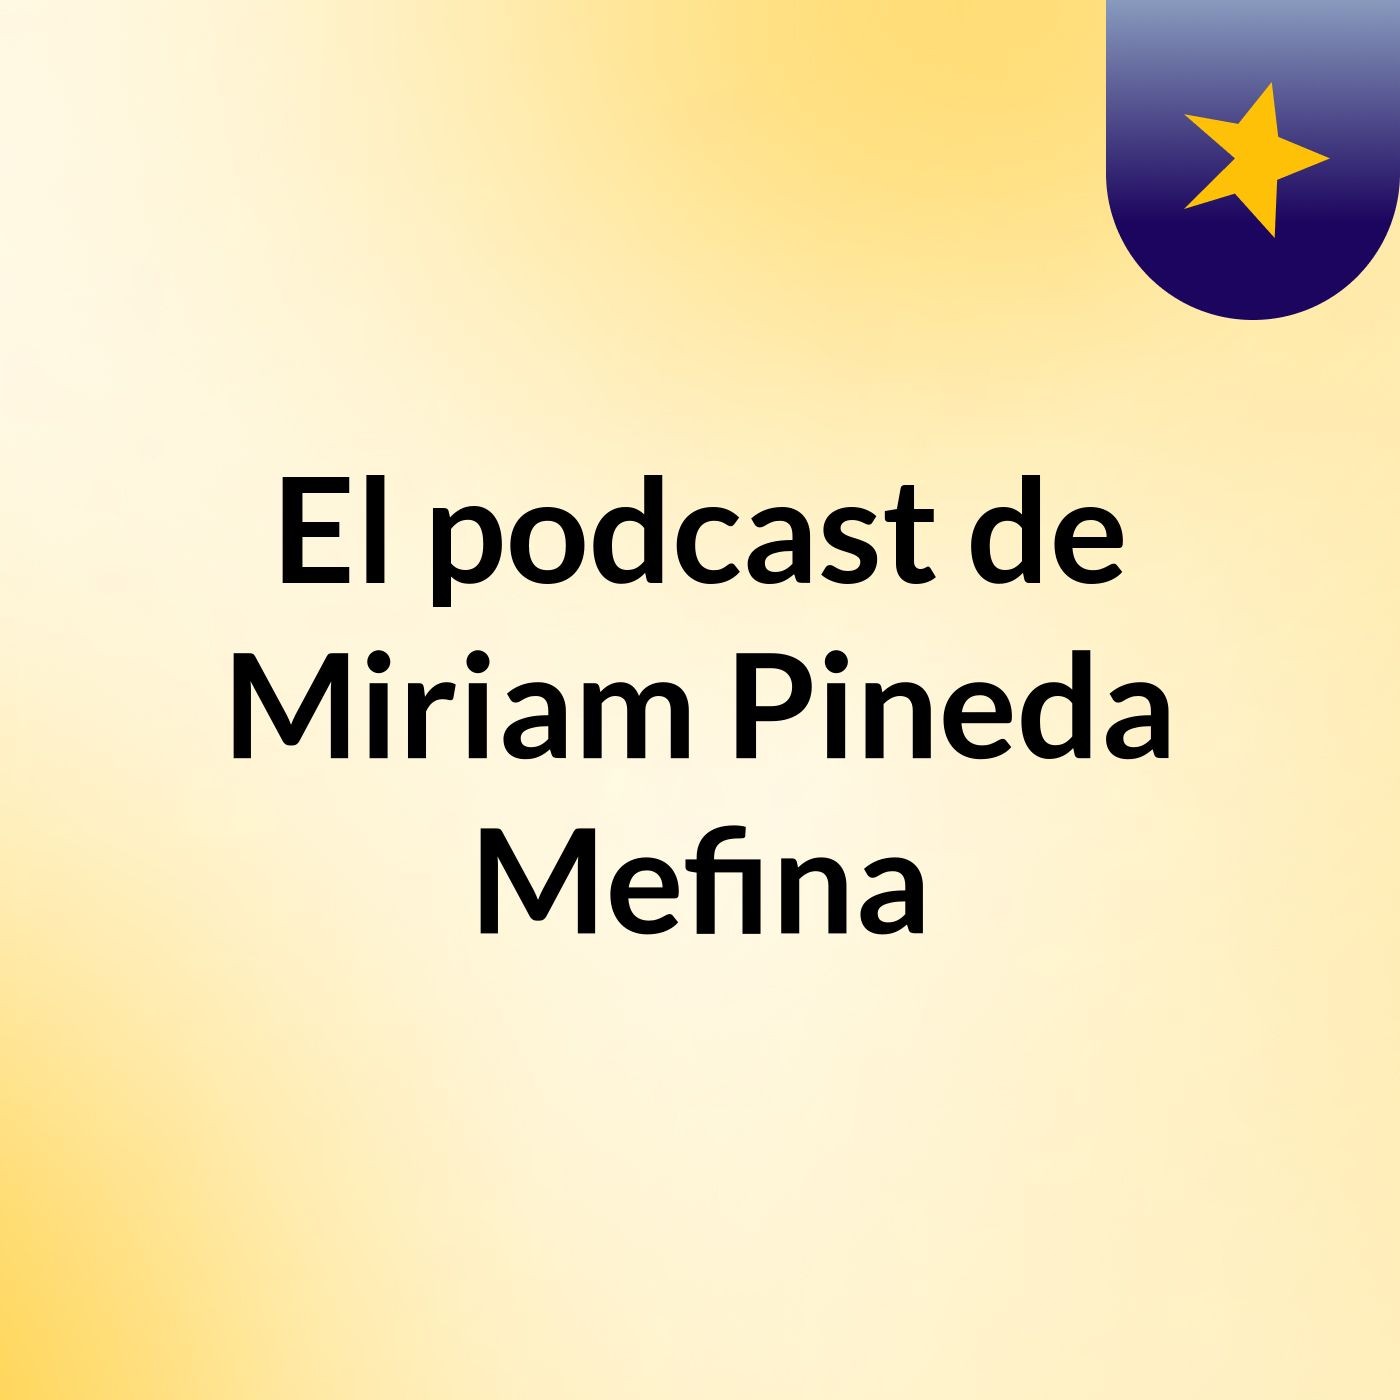 El podcast de Miriam Pineda Mefina